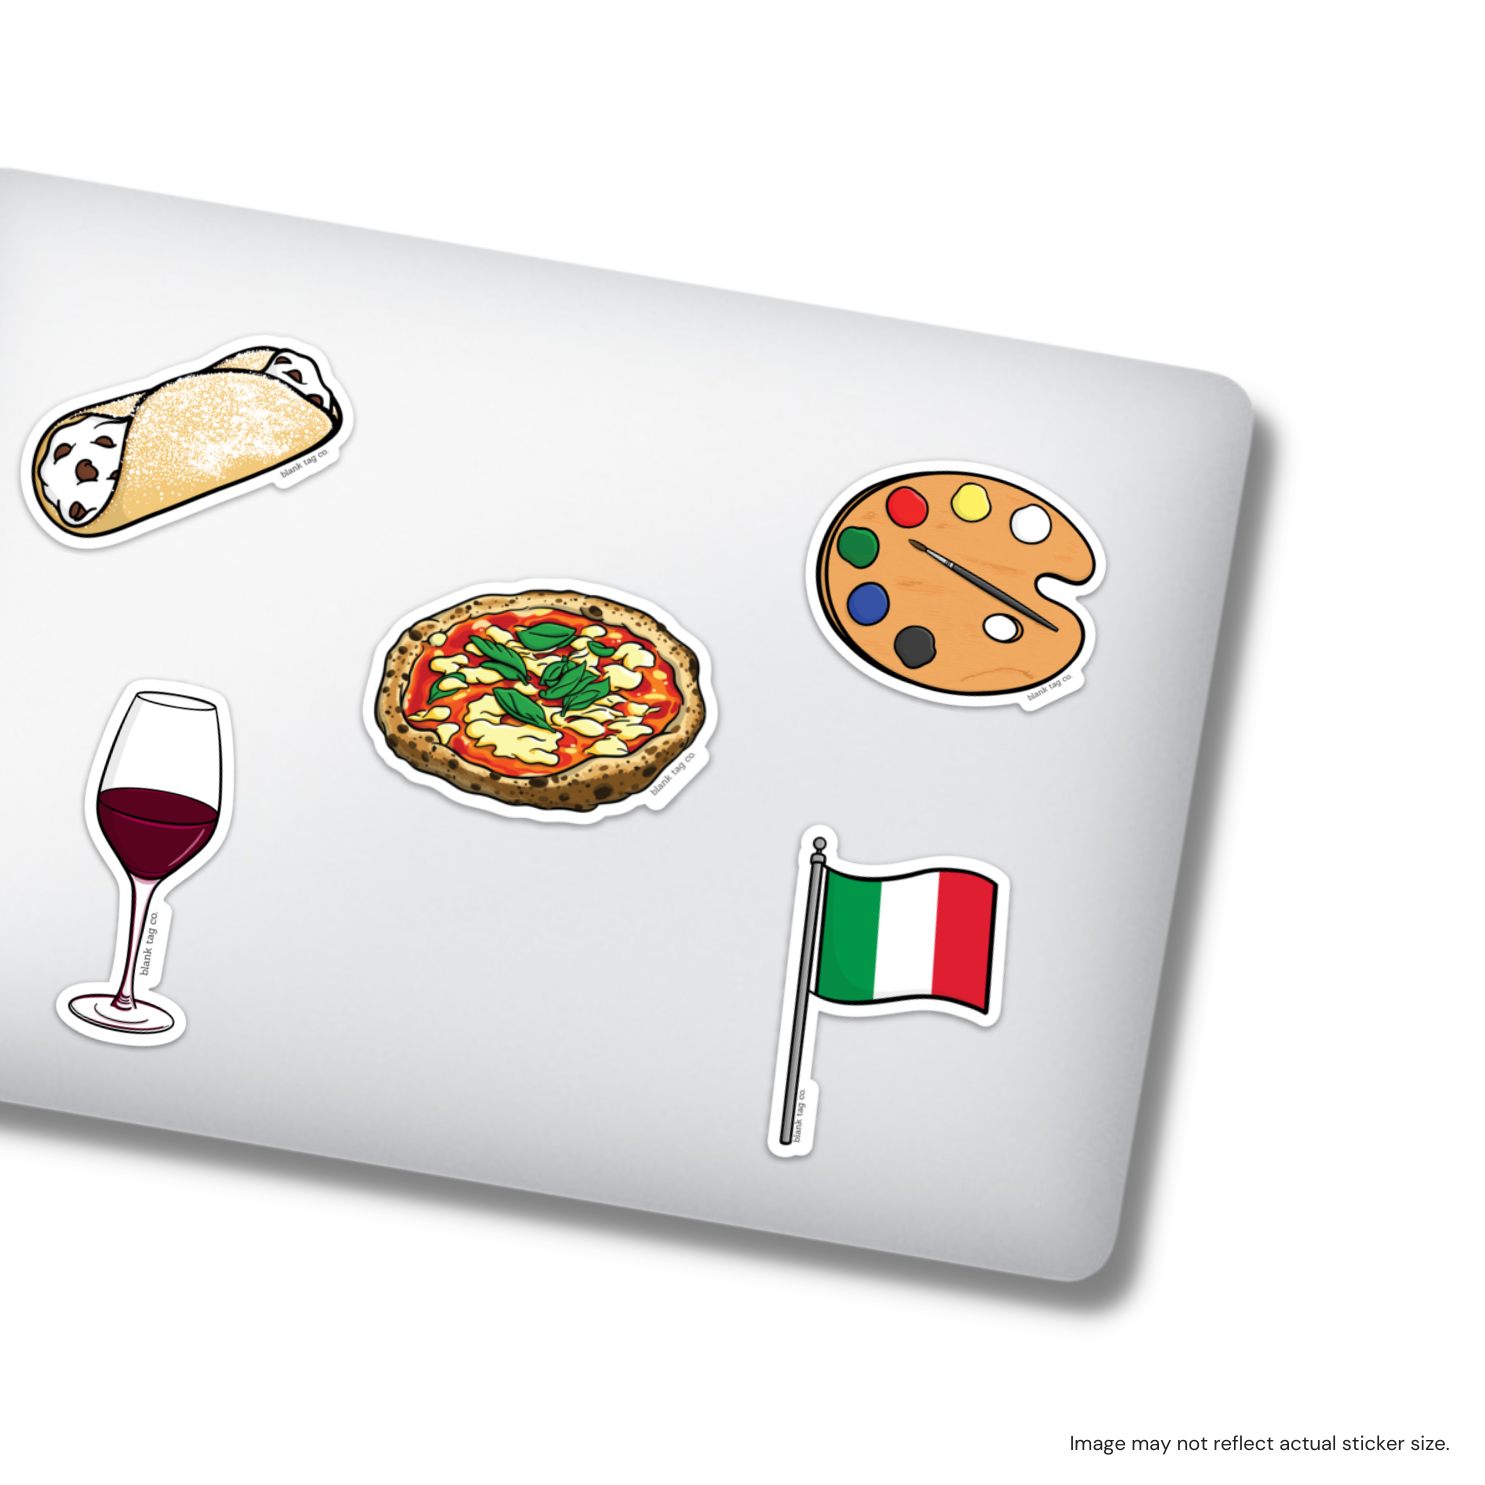 The Napoletana Pizza Sticker